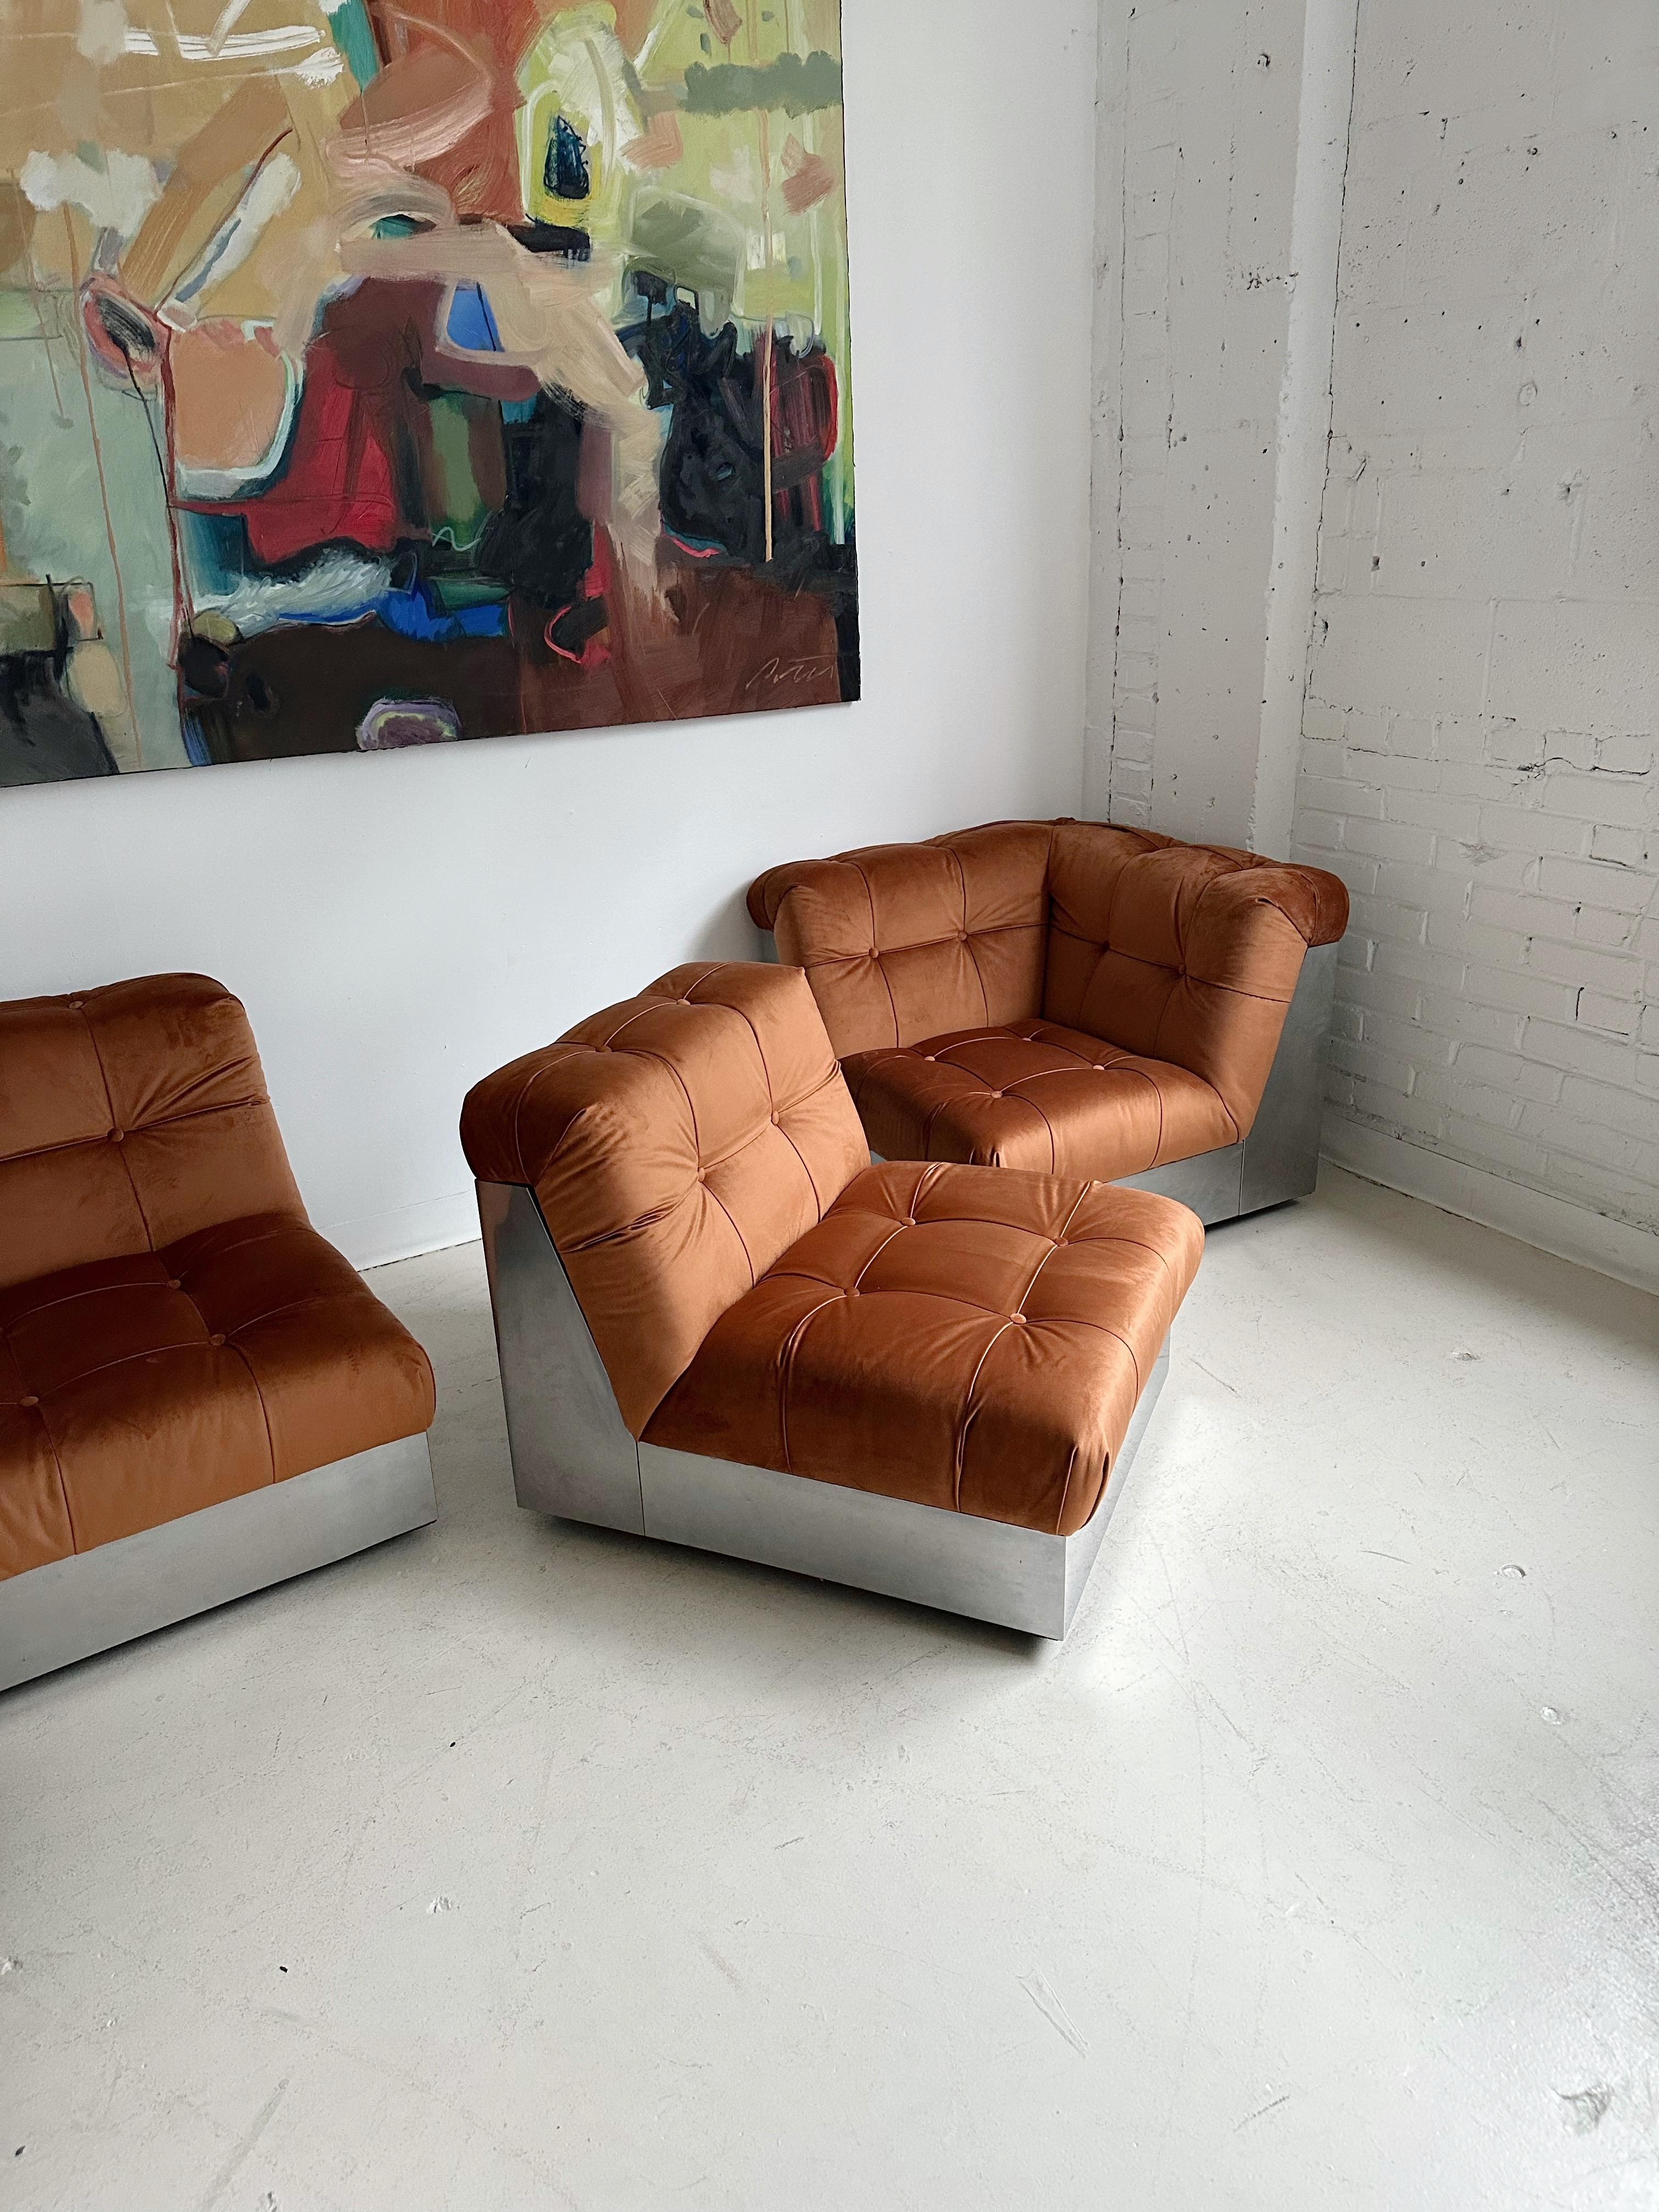 Samt & Stahlgestell 4 Pieces Modulares Sofa att. to Canasta by Giorgio Montani 8